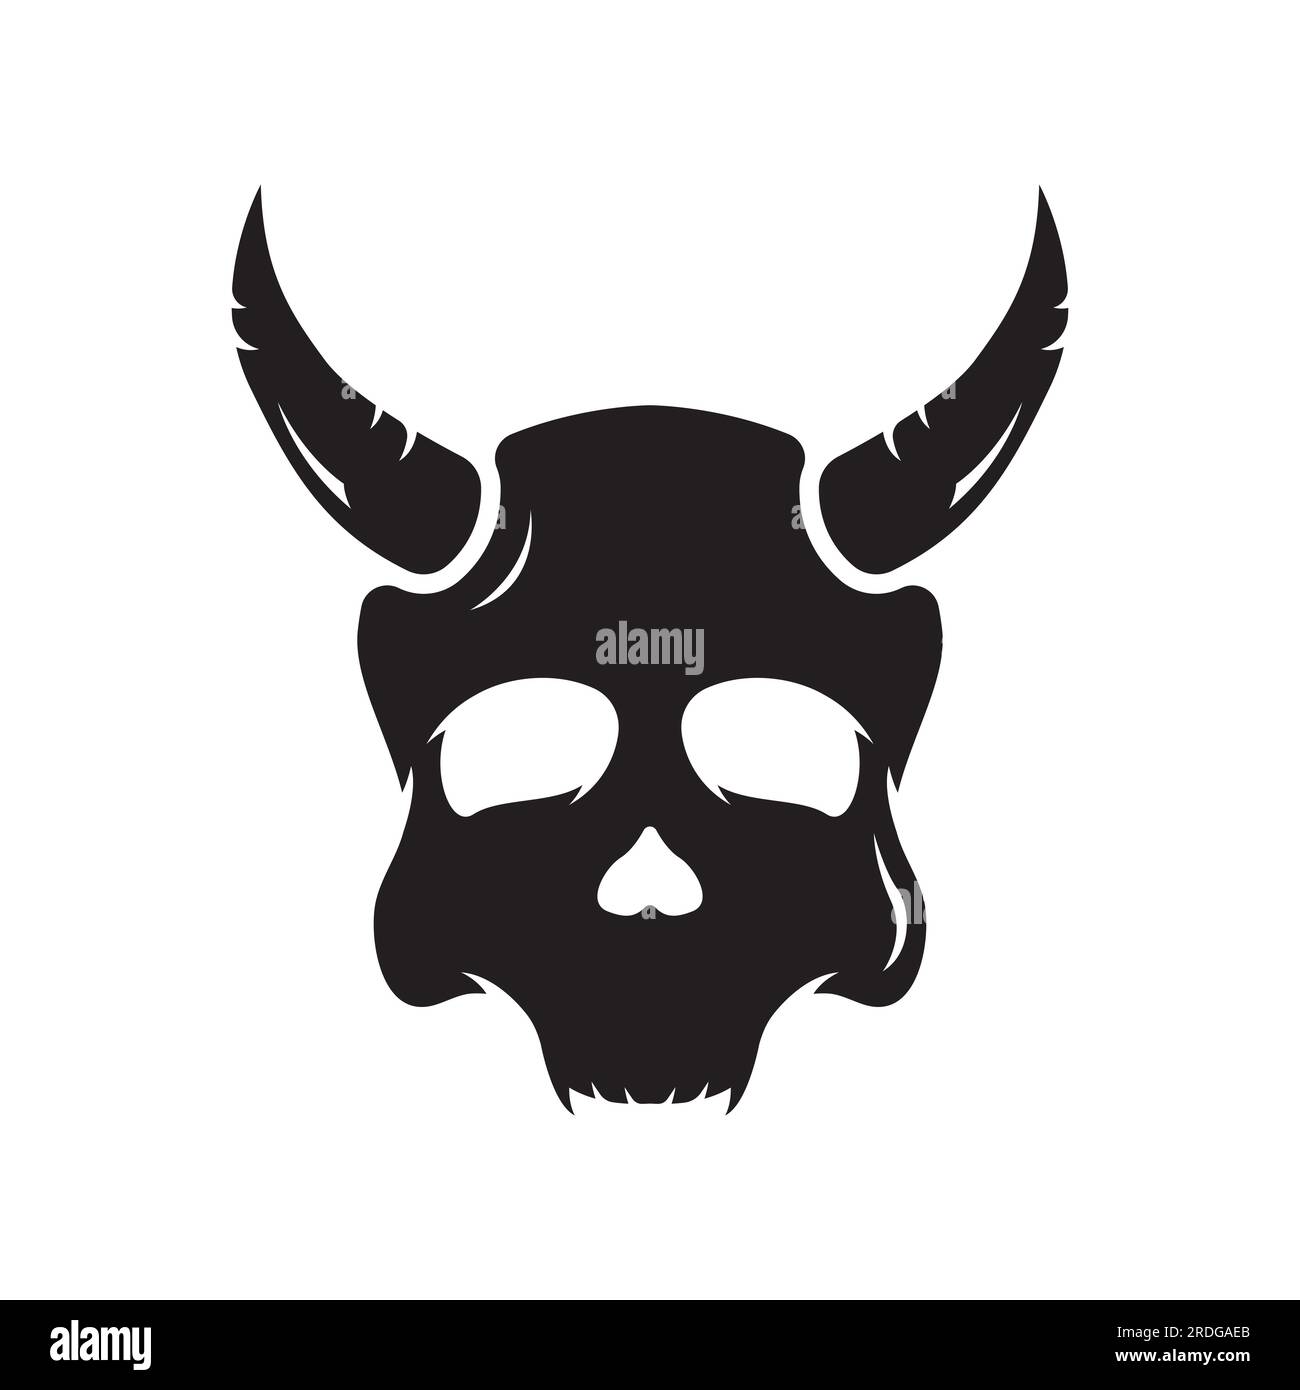 Fire skull head logo with horns, warrior, dark,strong, tattoo,vintage logo. Stock Vector